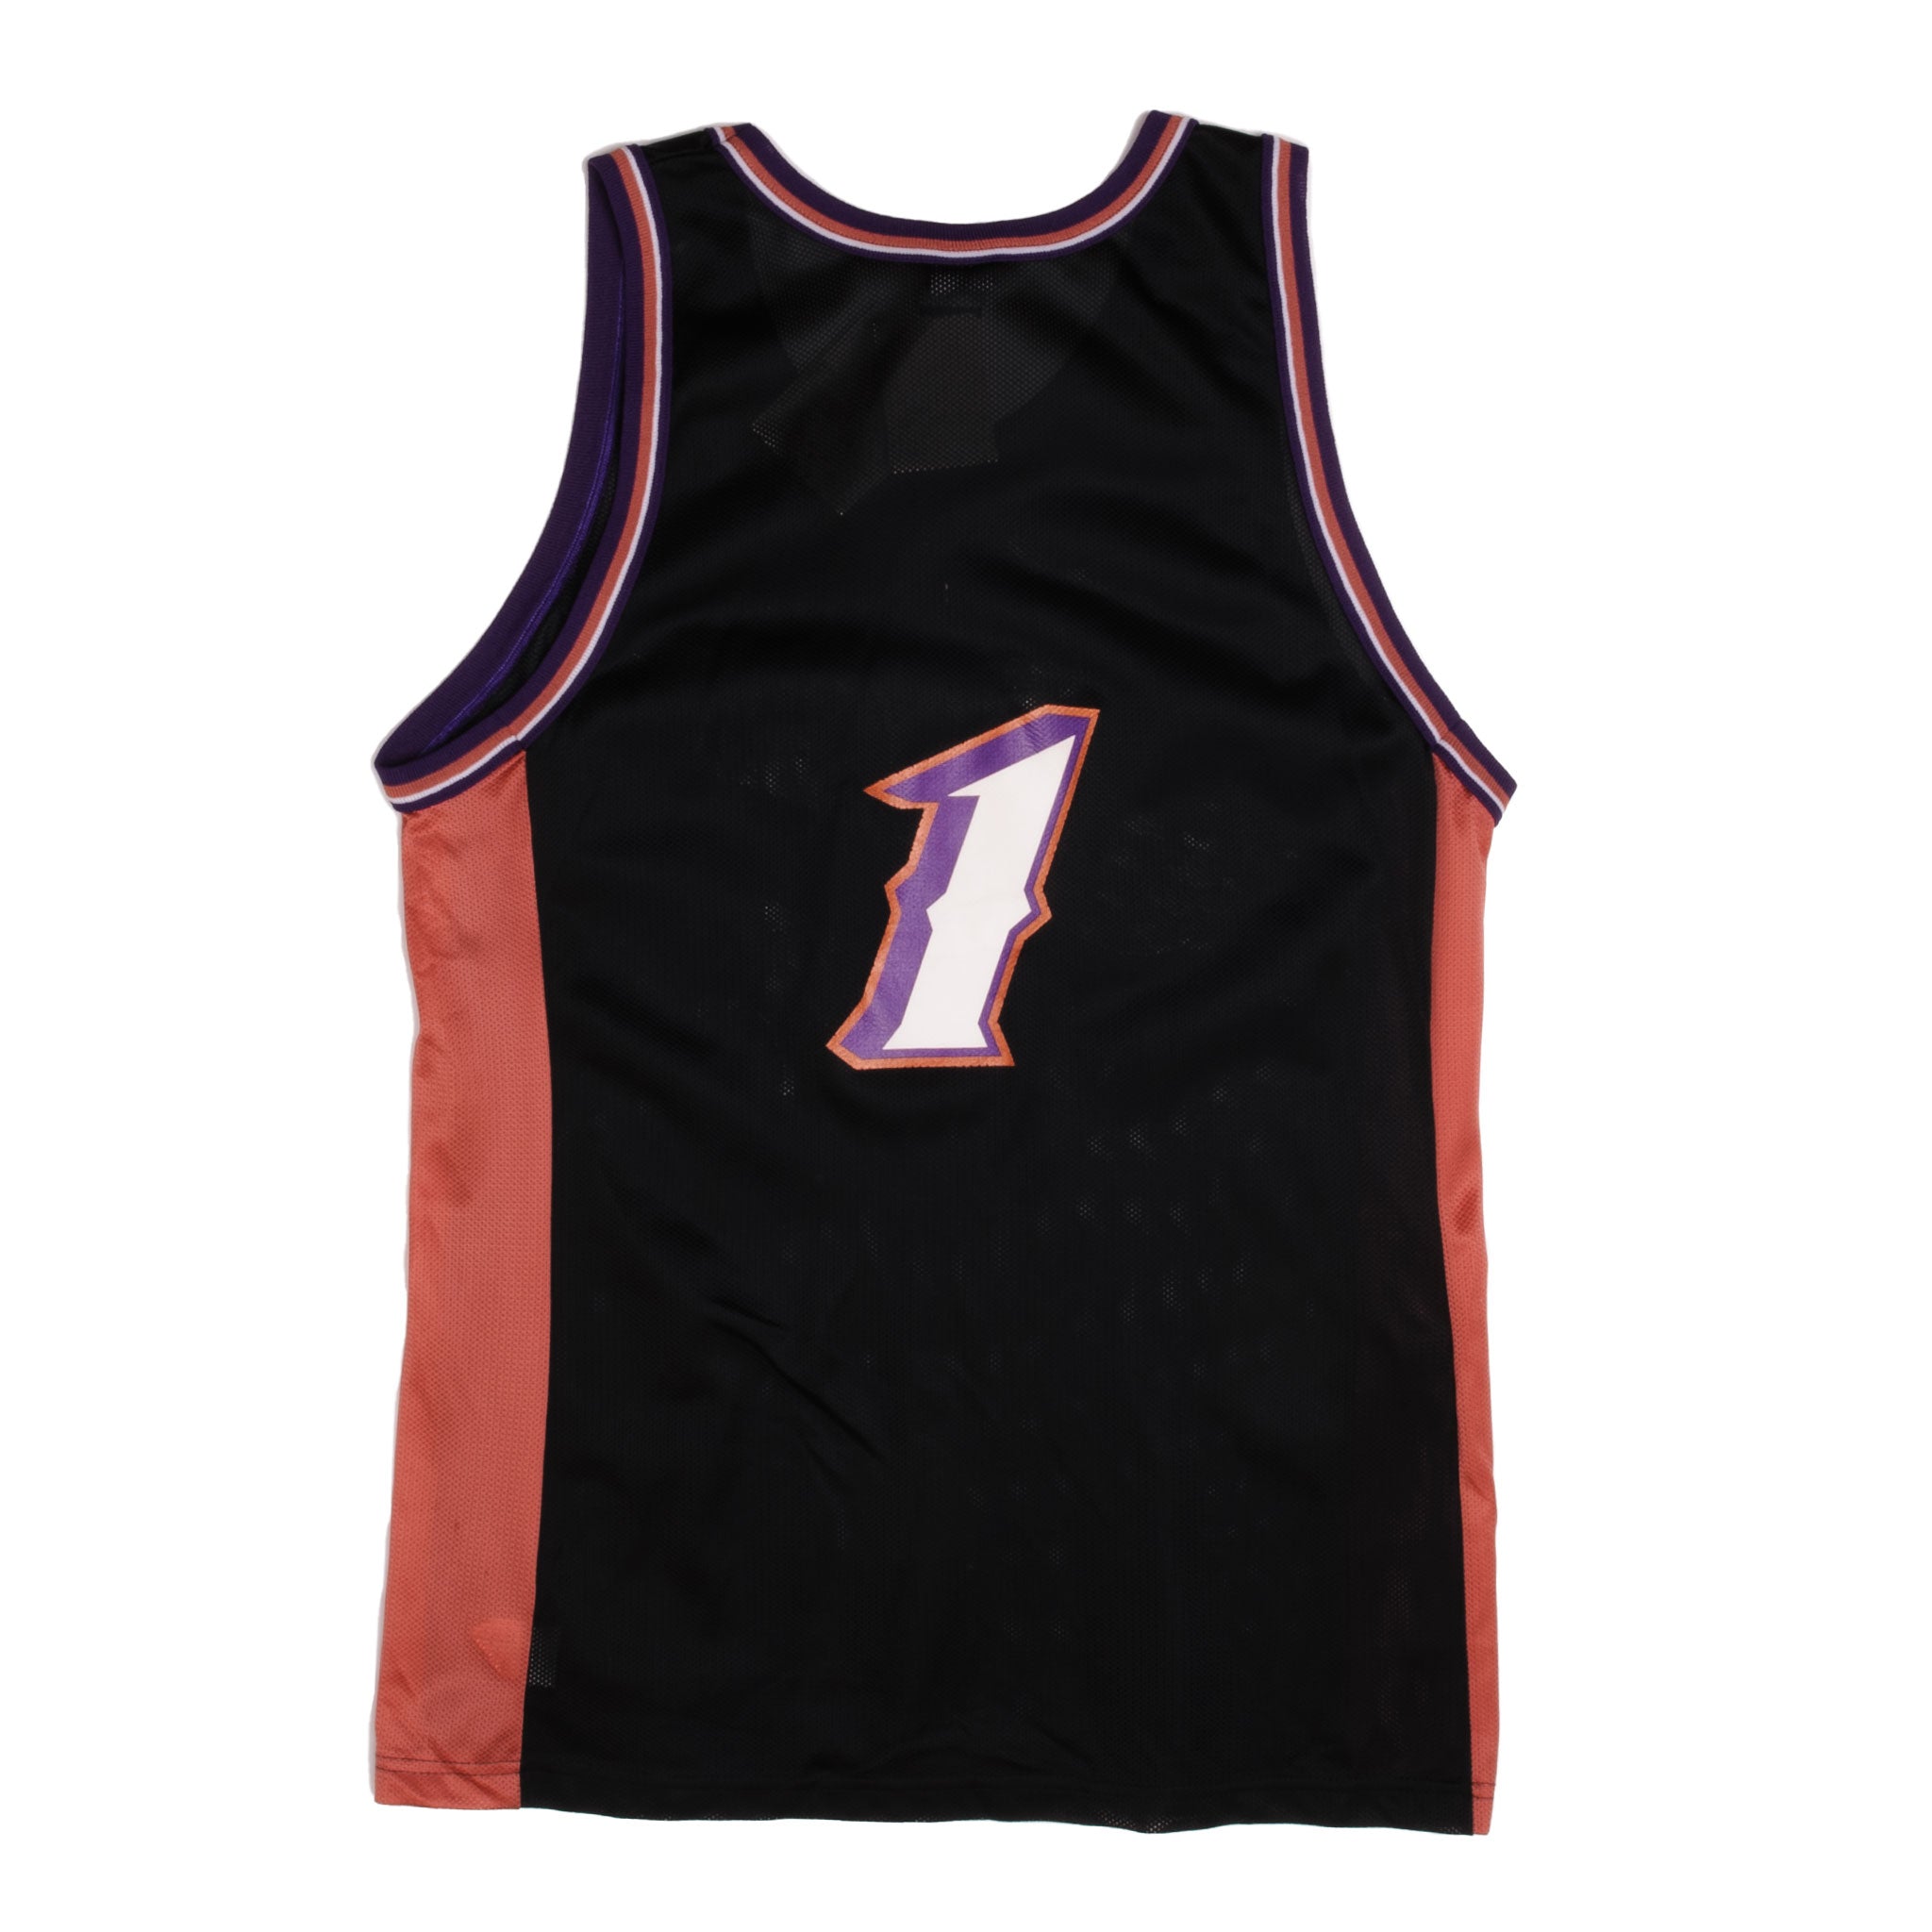 Utah Jazz Jersey 90's - Large – Lot 1 Vintage